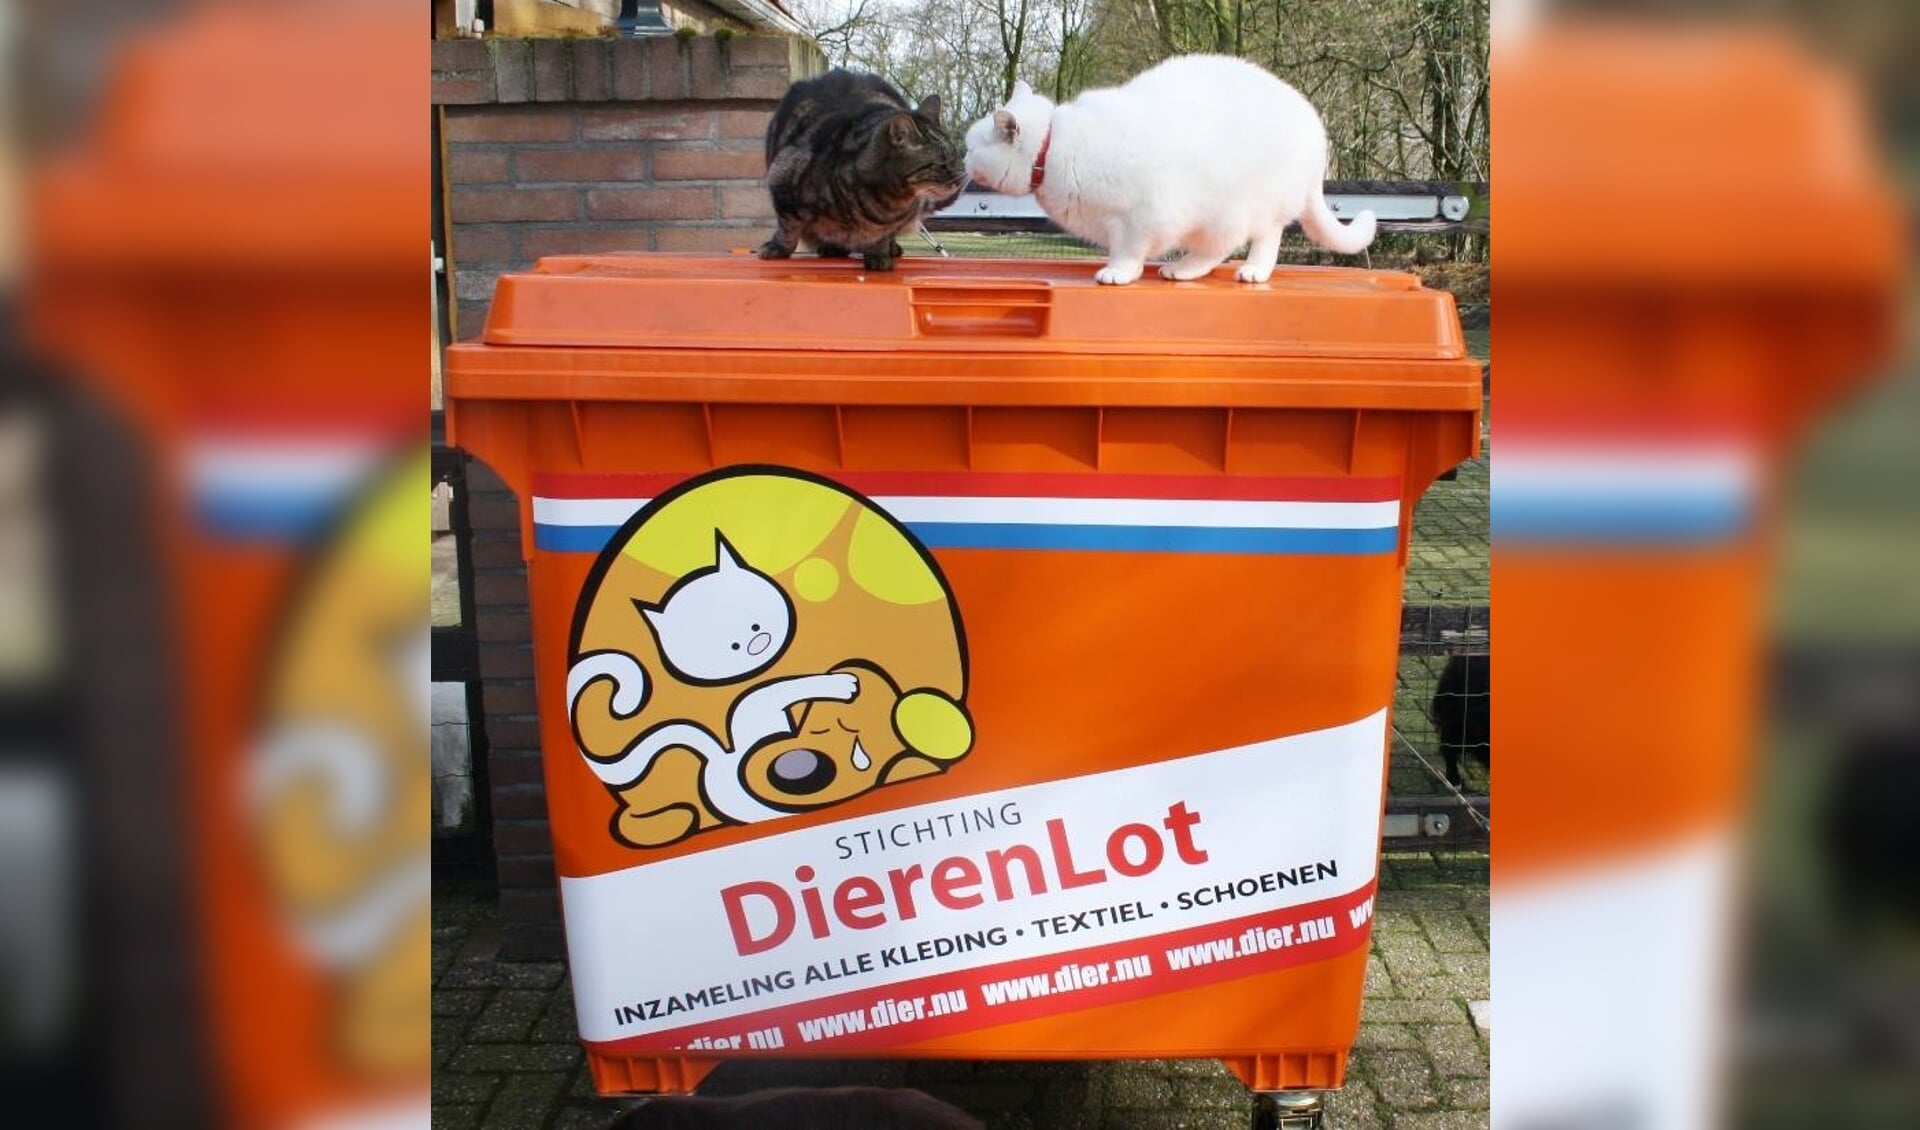 Eenzelfde container hoort voor Dintelkat in Dinteloord te staan. Op de foto zijn de katten Robijntje en Tinus te zien van Stichting Hanna die in De Achtste Hemel kwamen wonen. 